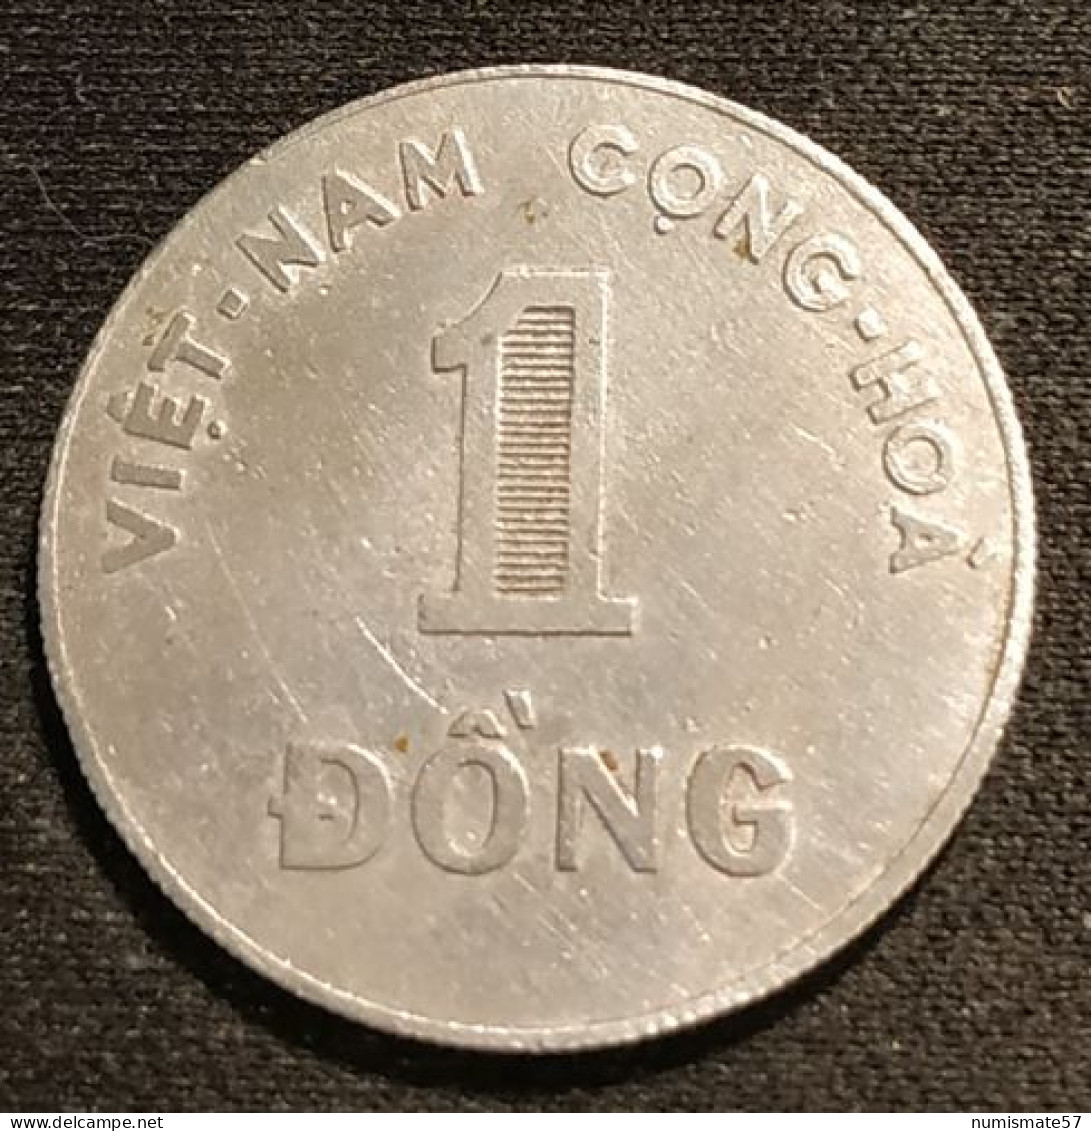 VIETNAM - VIET NAM - 1 DONG 1964 - KM 7 - Viêt-Nam